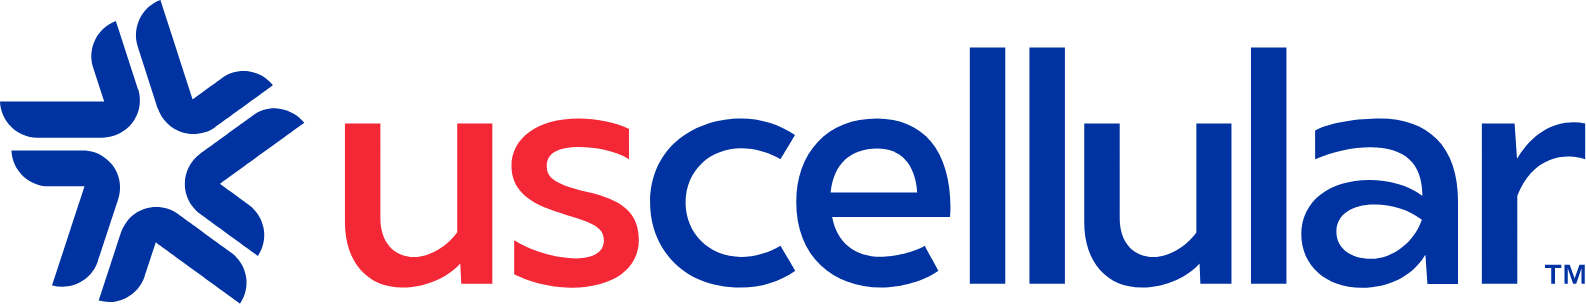 U.S. Cellular
 logo large (transparent PNG)